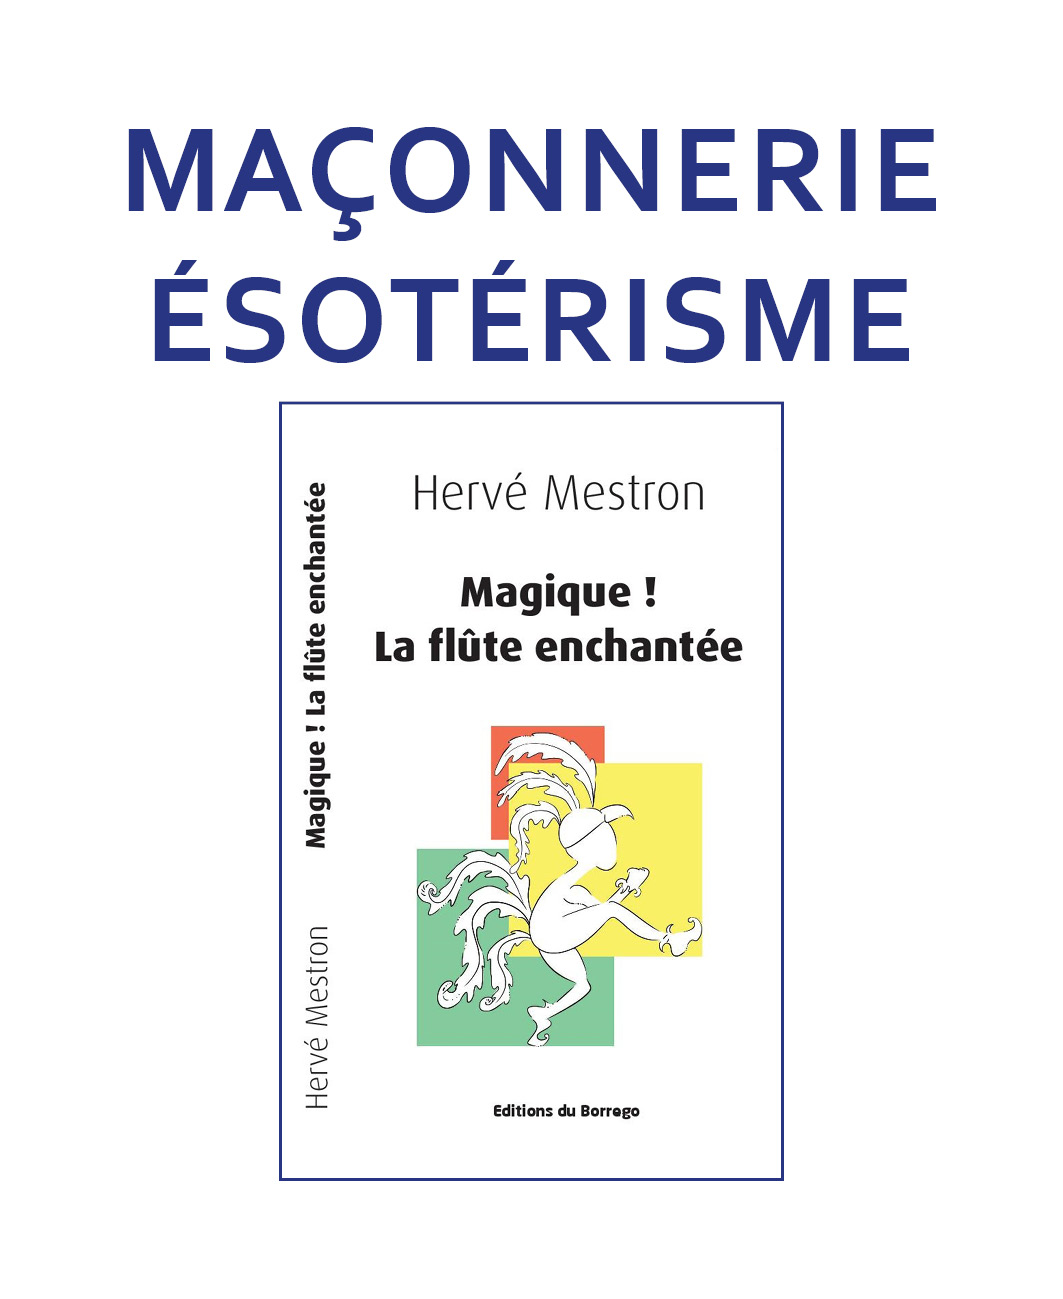  Franc-Maçonnerie - Esotérisme 